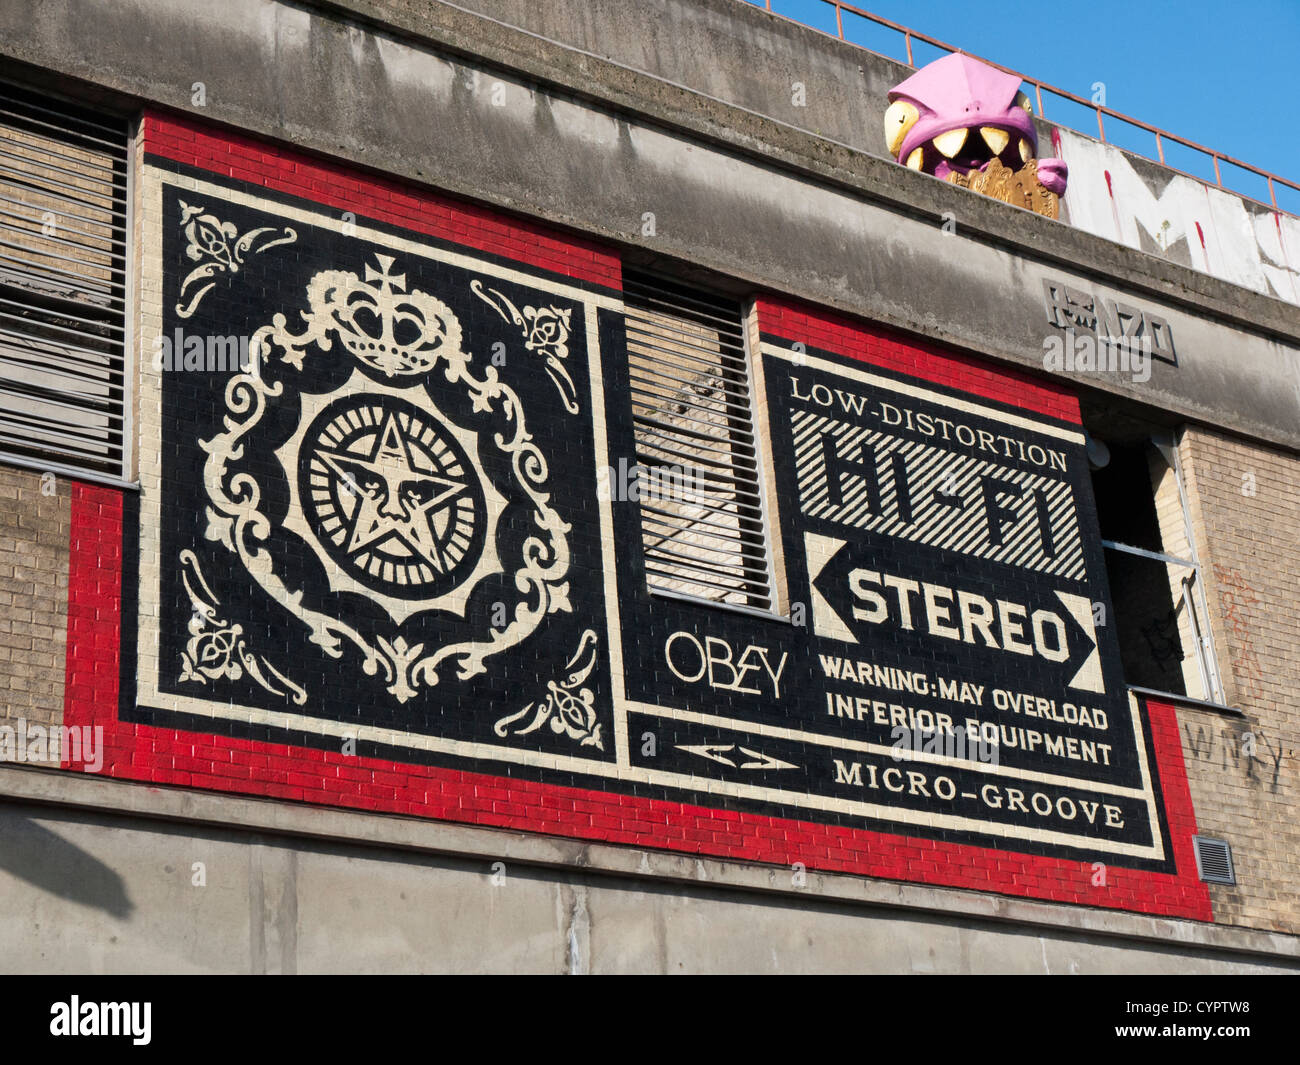 Arte de la calle por el artista Shepard Fairey producidos antes de su exposición en East London Foto de stock